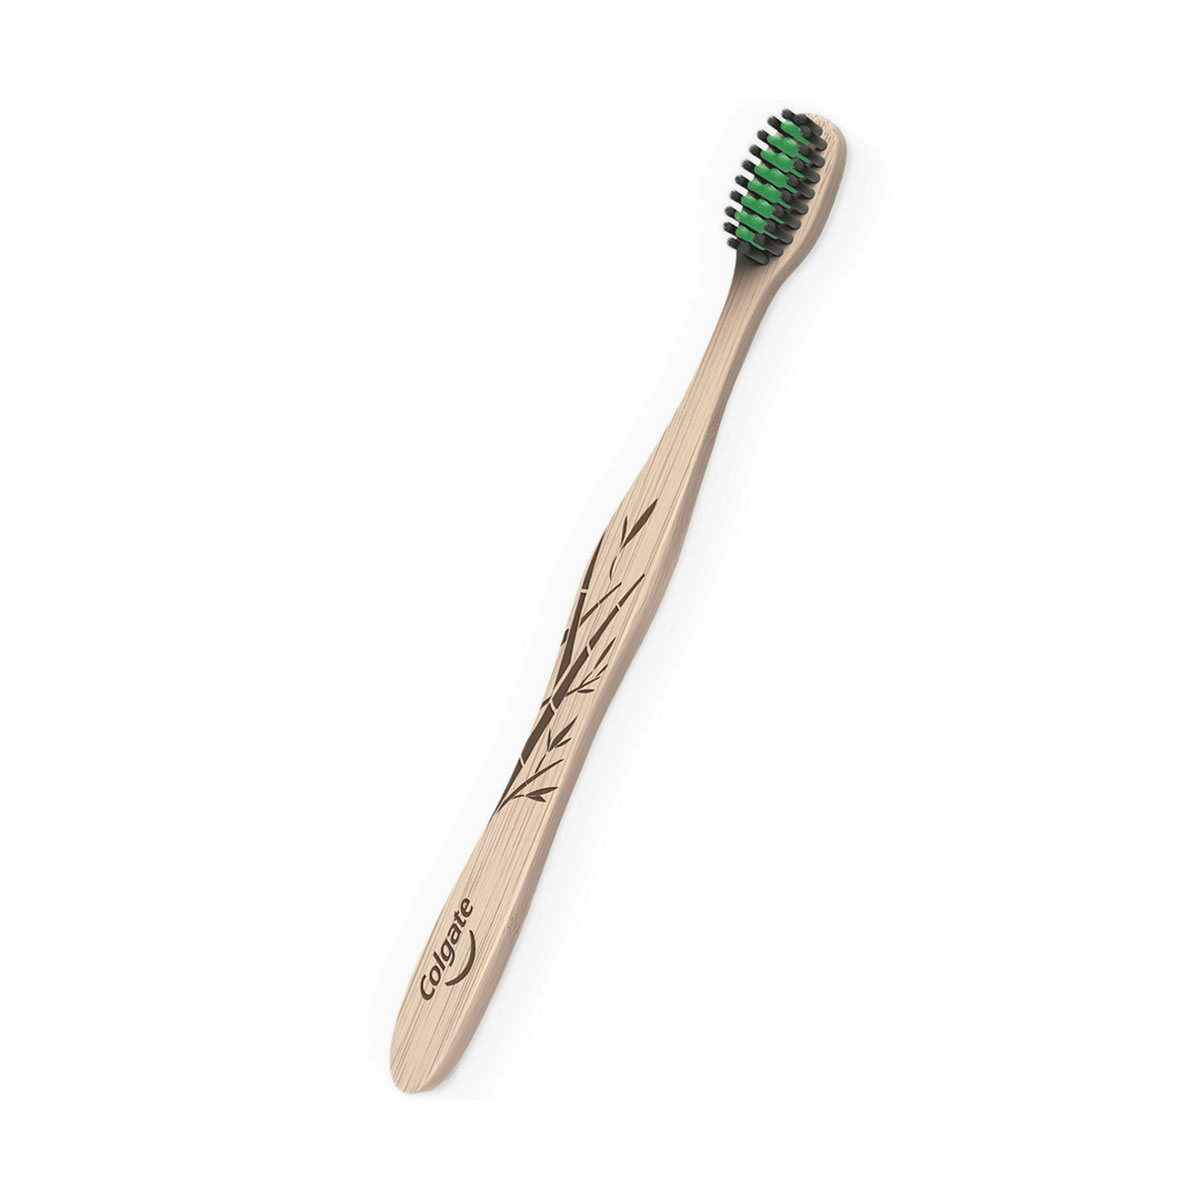 Cepillo de dientes Colgate Bambú Carbón con filamentos impregnados de carbón, suave